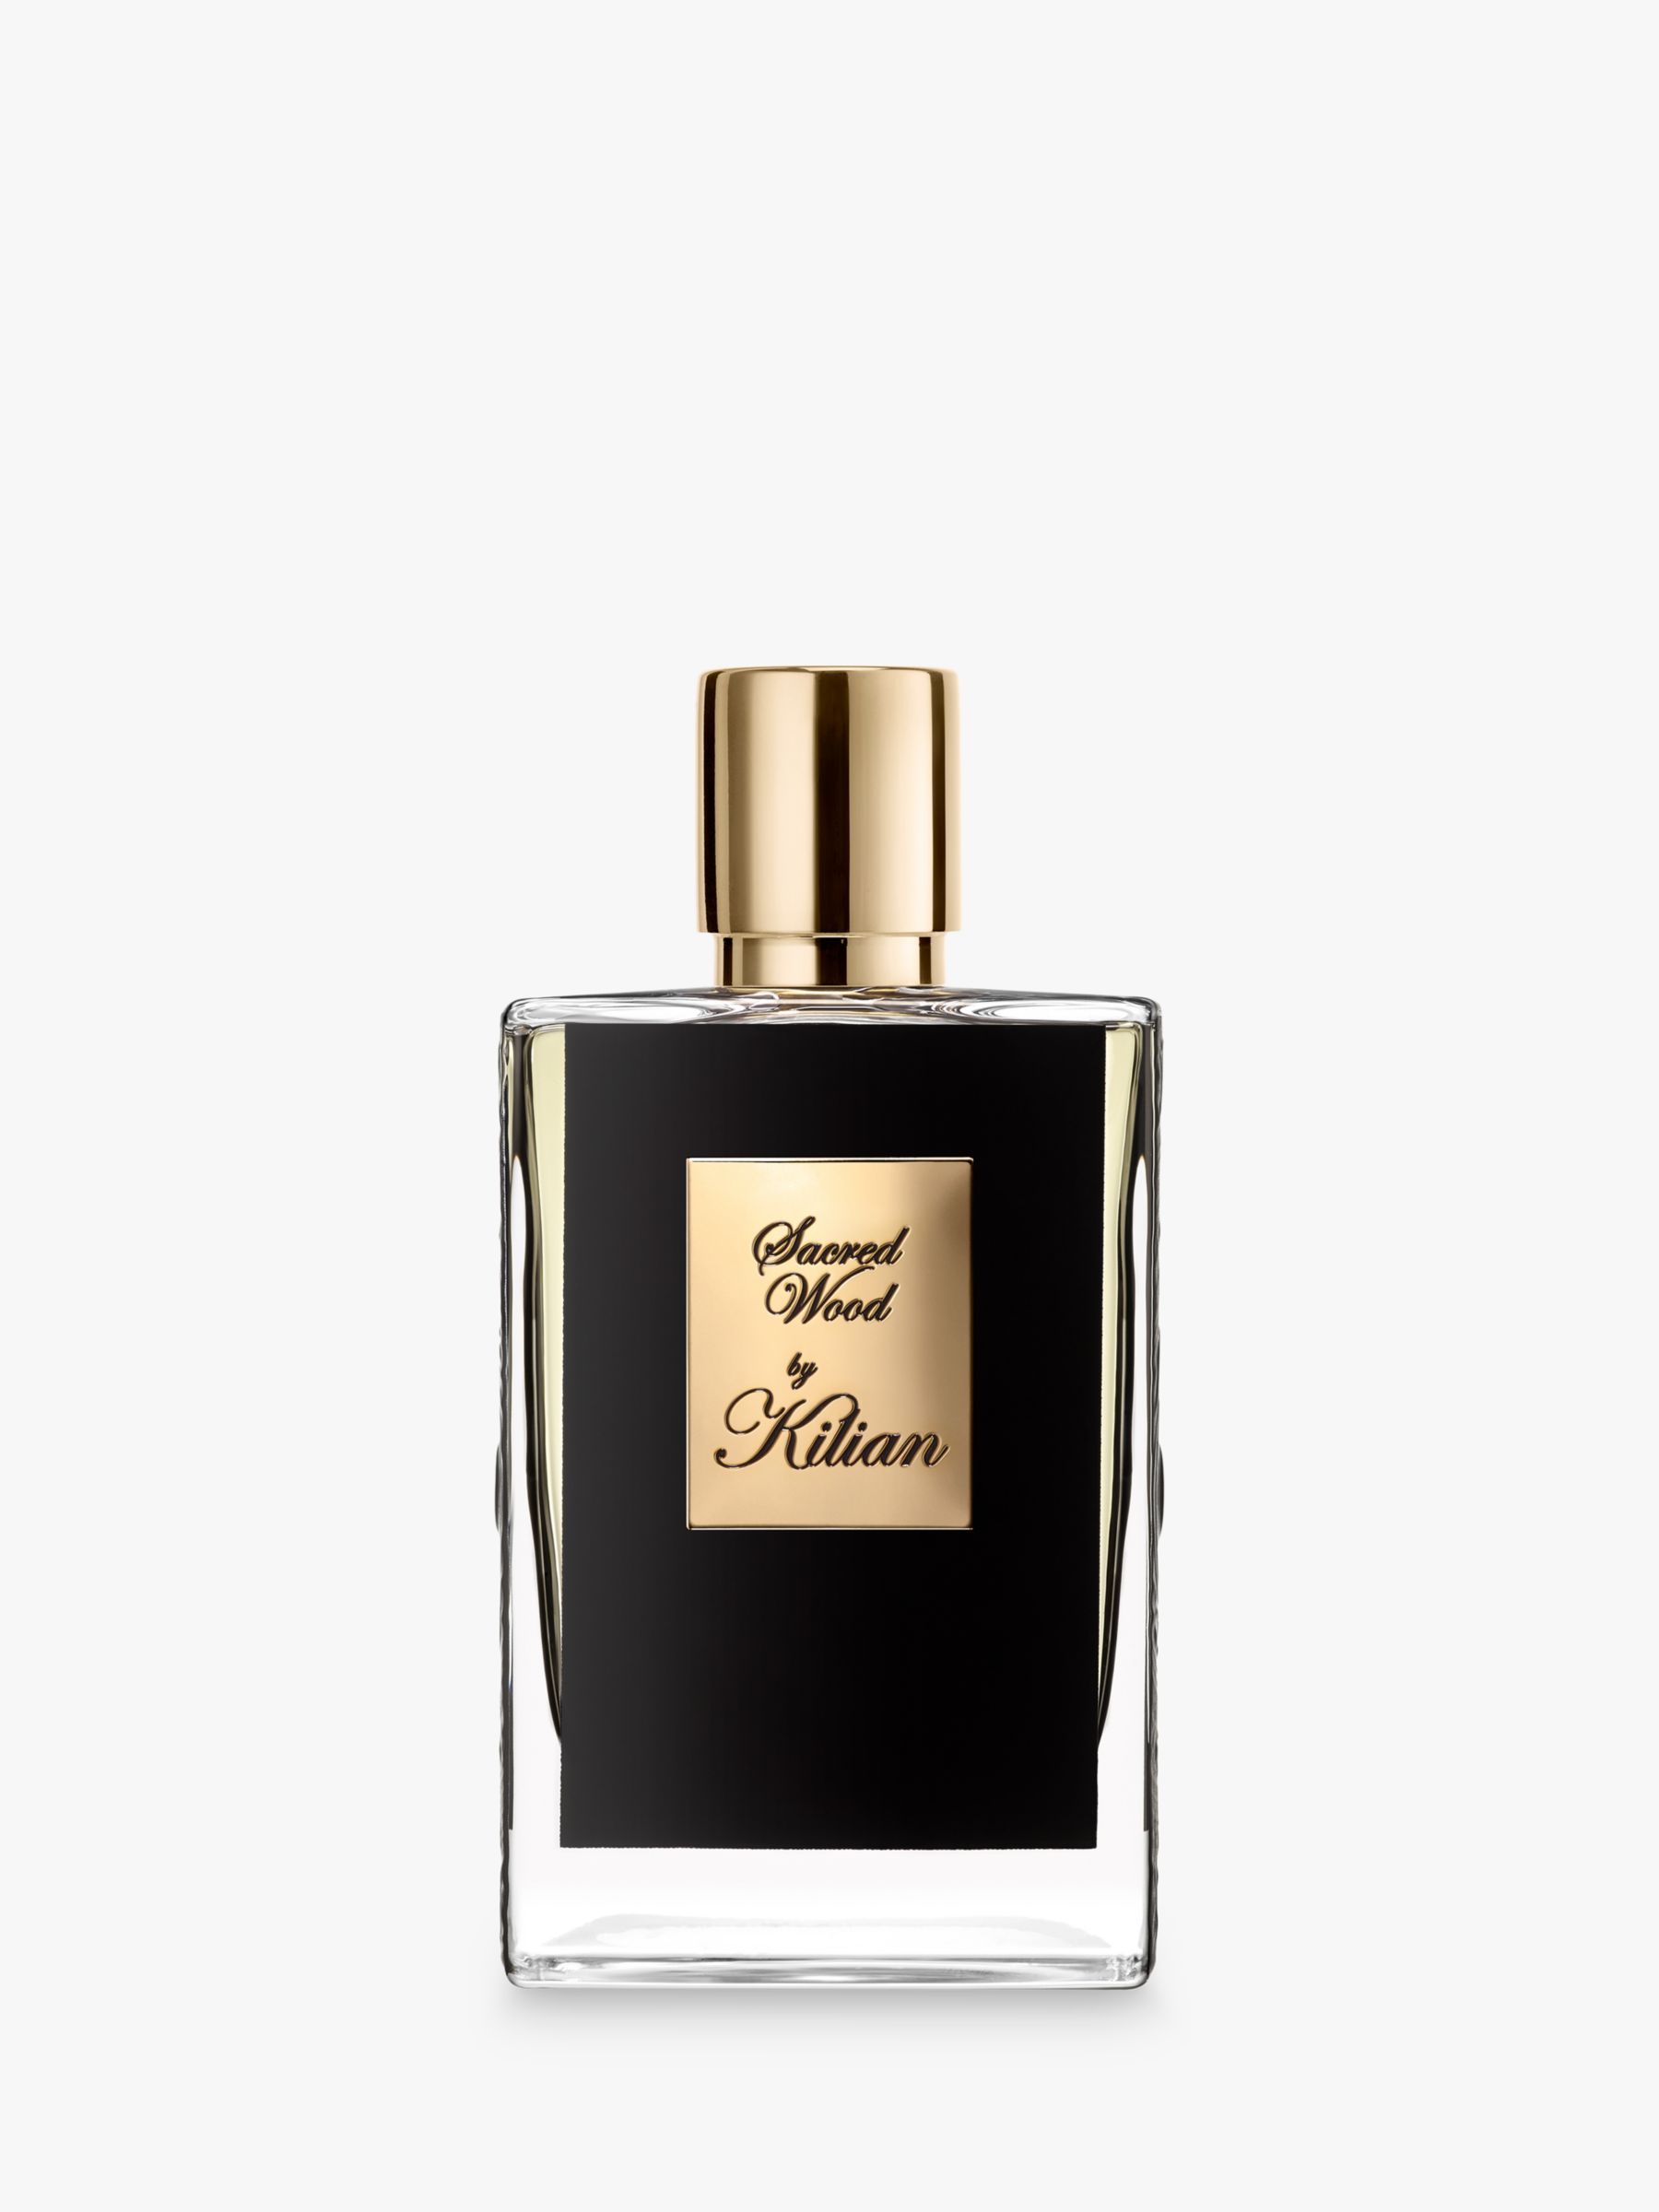 KILIAN PARIS Sacred Wood Eau de Parfum, 50ml 1